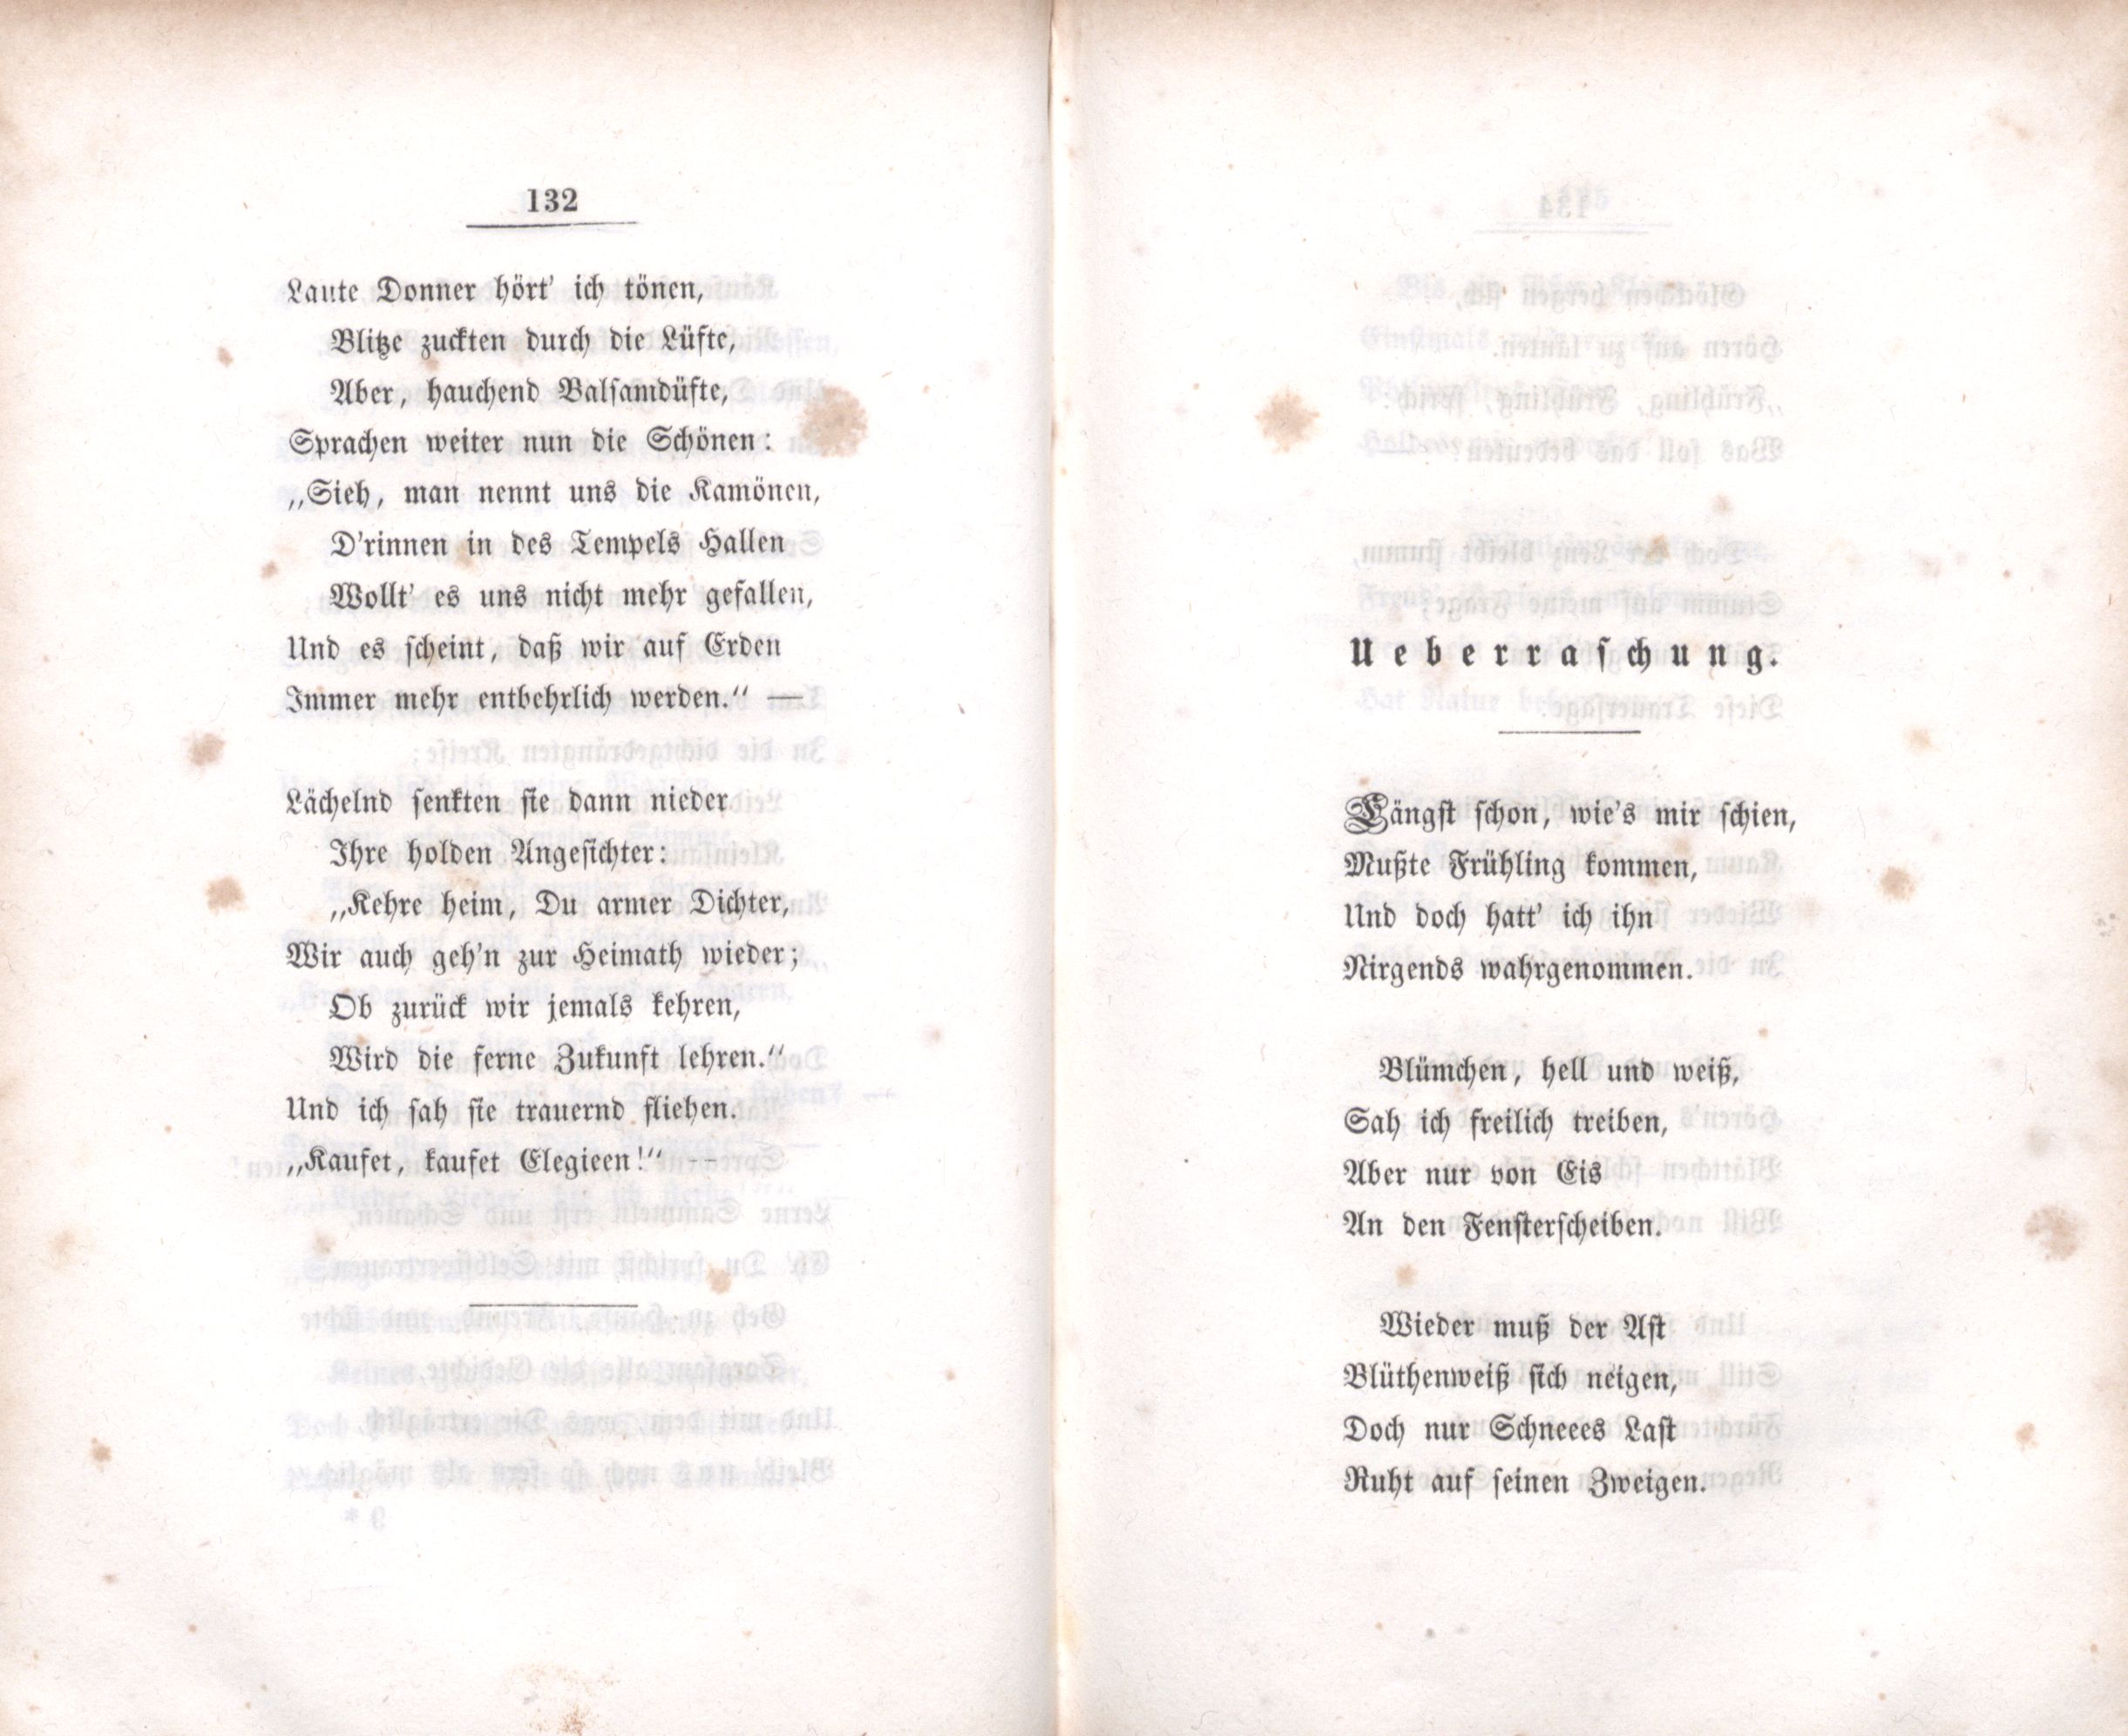 Ueberraschung (1848) | 1. (132-133) Haupttext